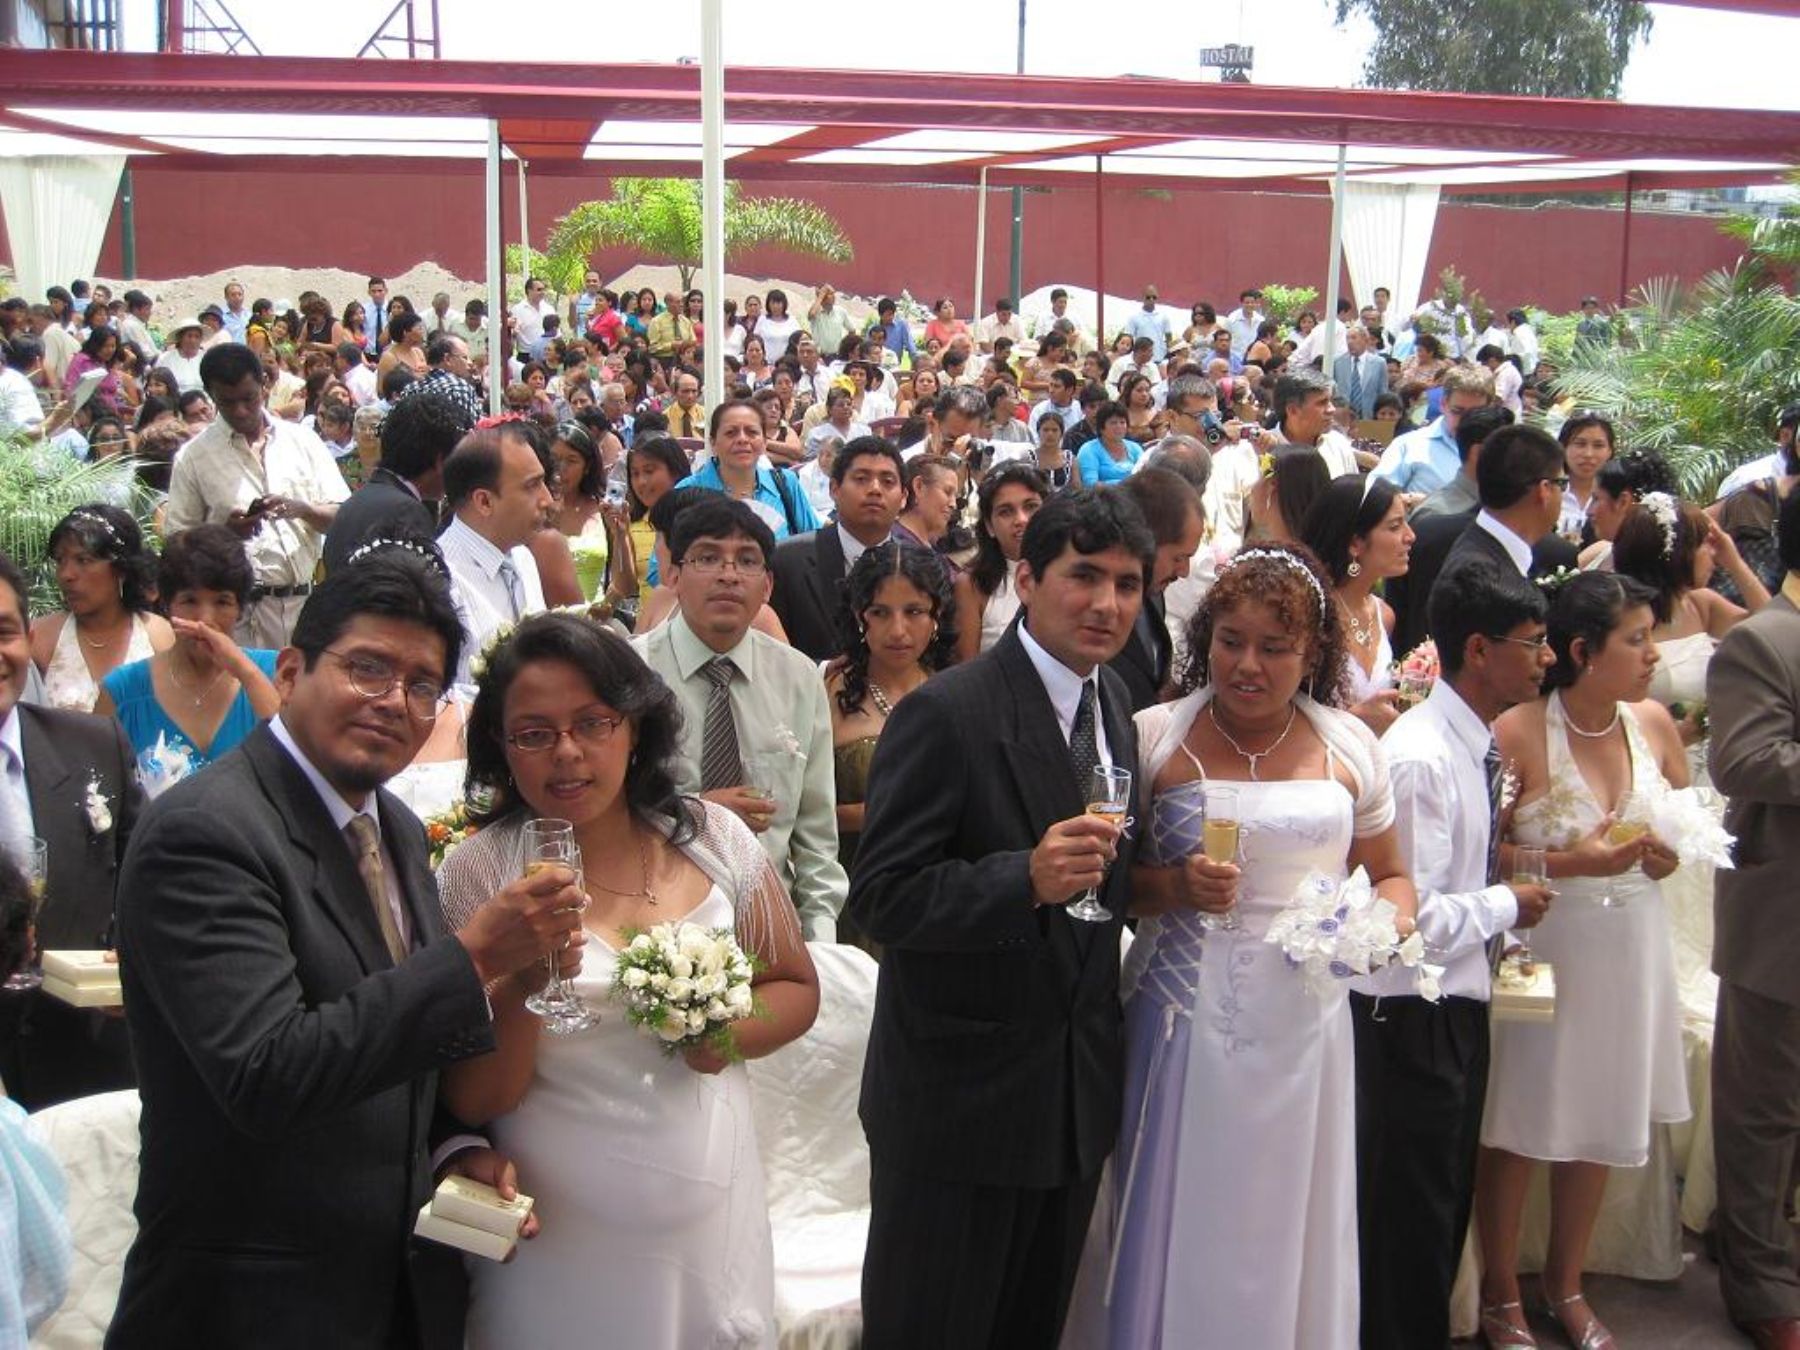 Matrimonio masivo en La victoria. Foto: Andina/Mun. de LV.